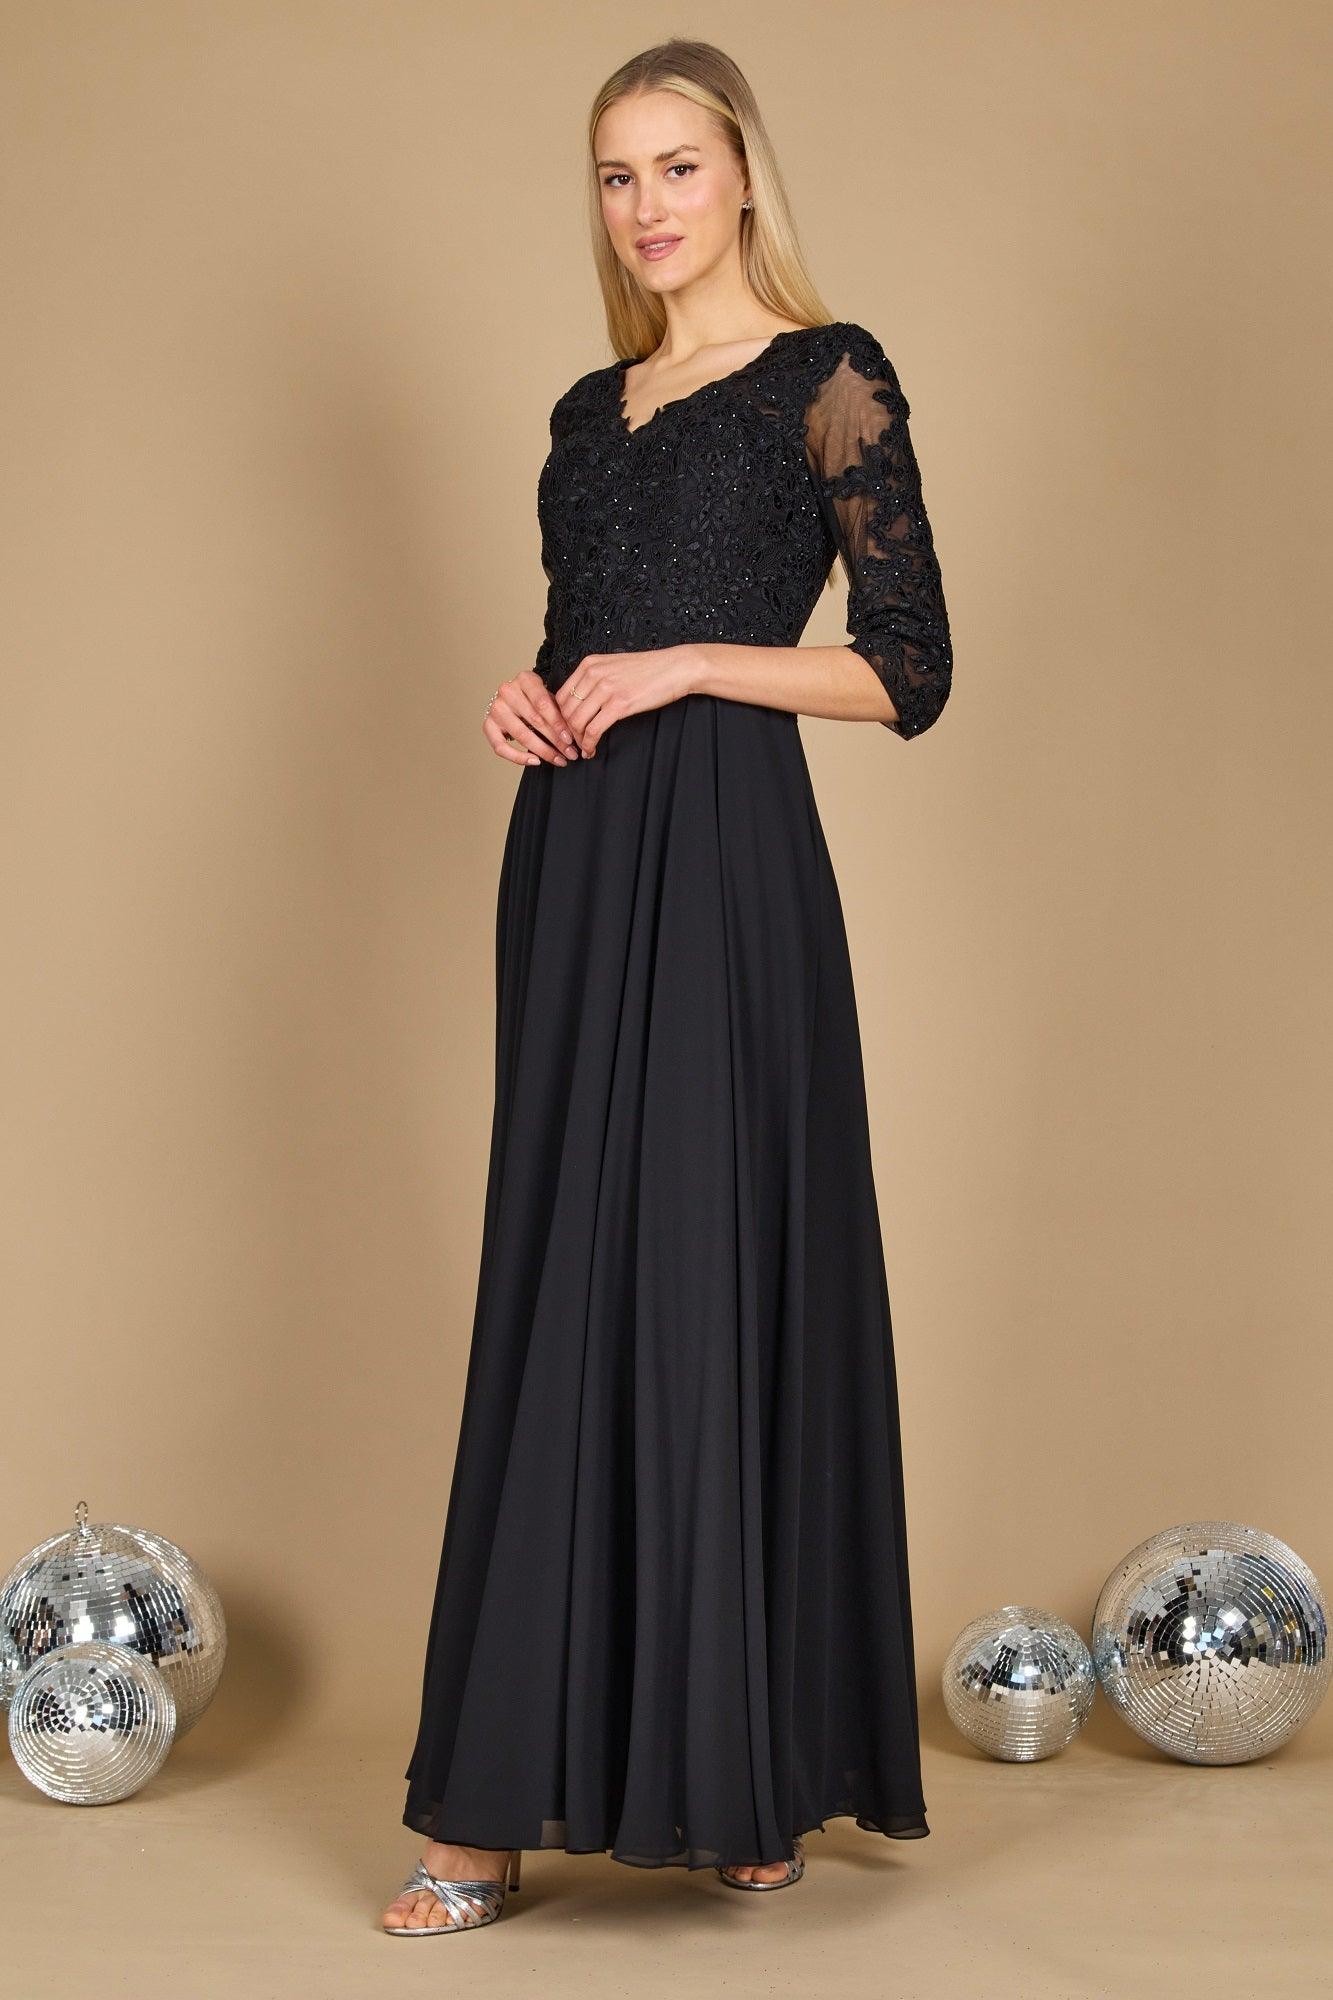 Formal Dresses Long Formal Mother of the Bride Dress  Black